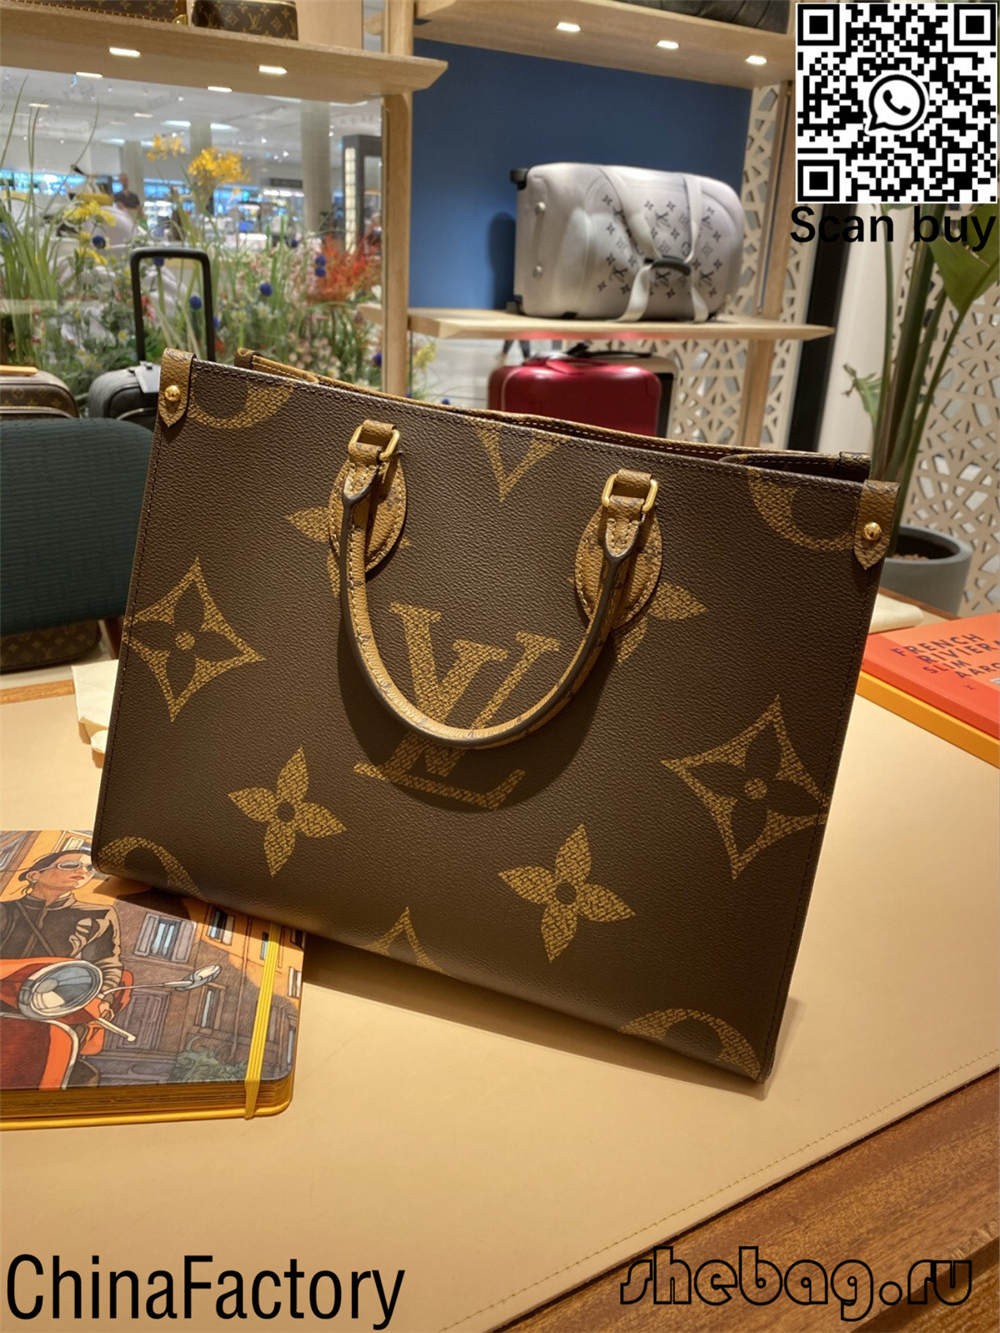 Копія сумки Louis Vuitton в Китаї купити (останнє 2022 року) - Інтернет-магазин підробленої сумки Louis Vuitton найкращої якості, копія дизайнерської сумки ru